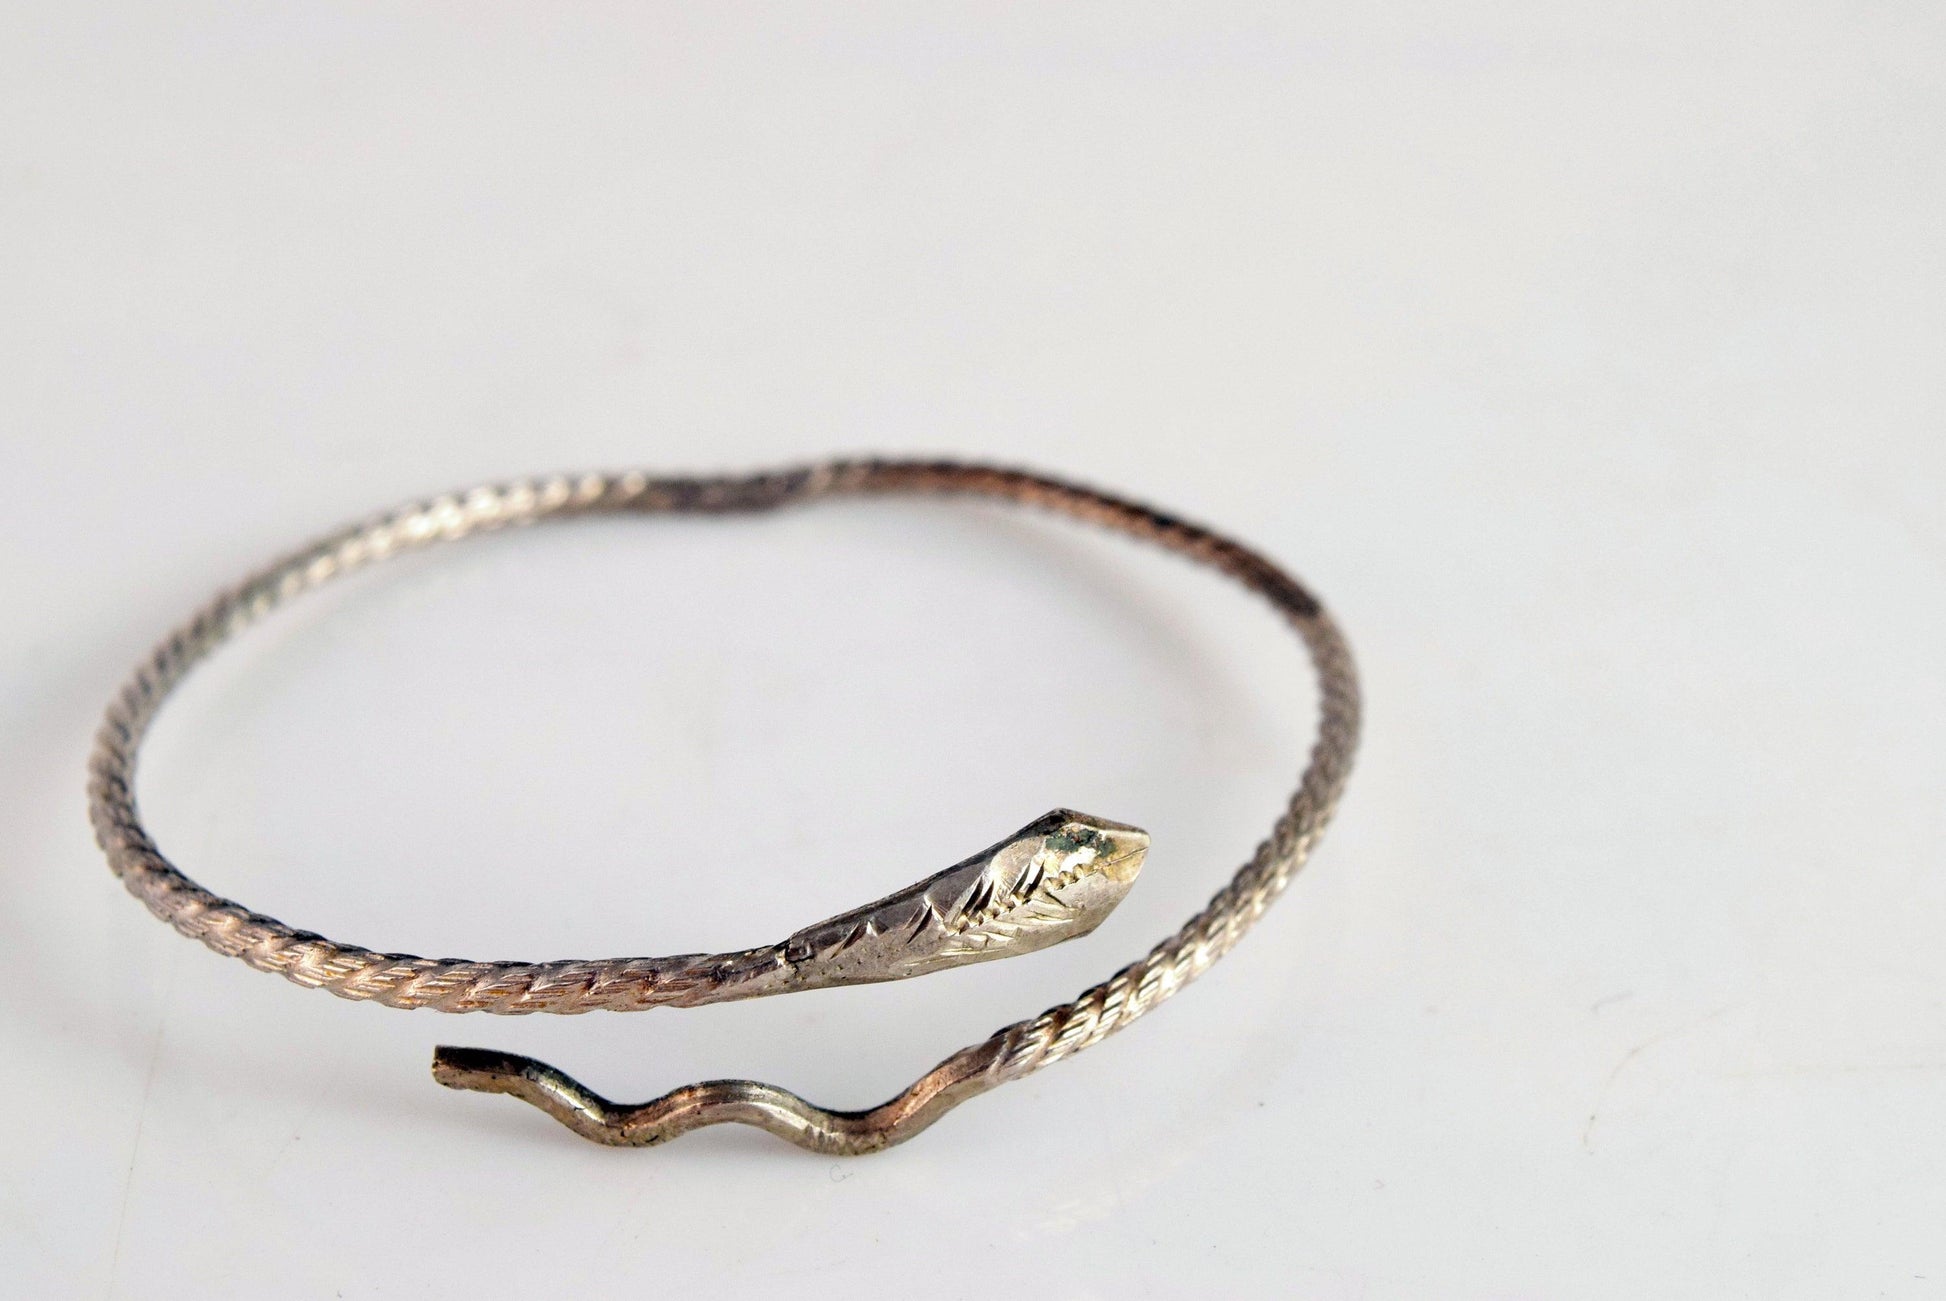 Egyptian snake bracelet